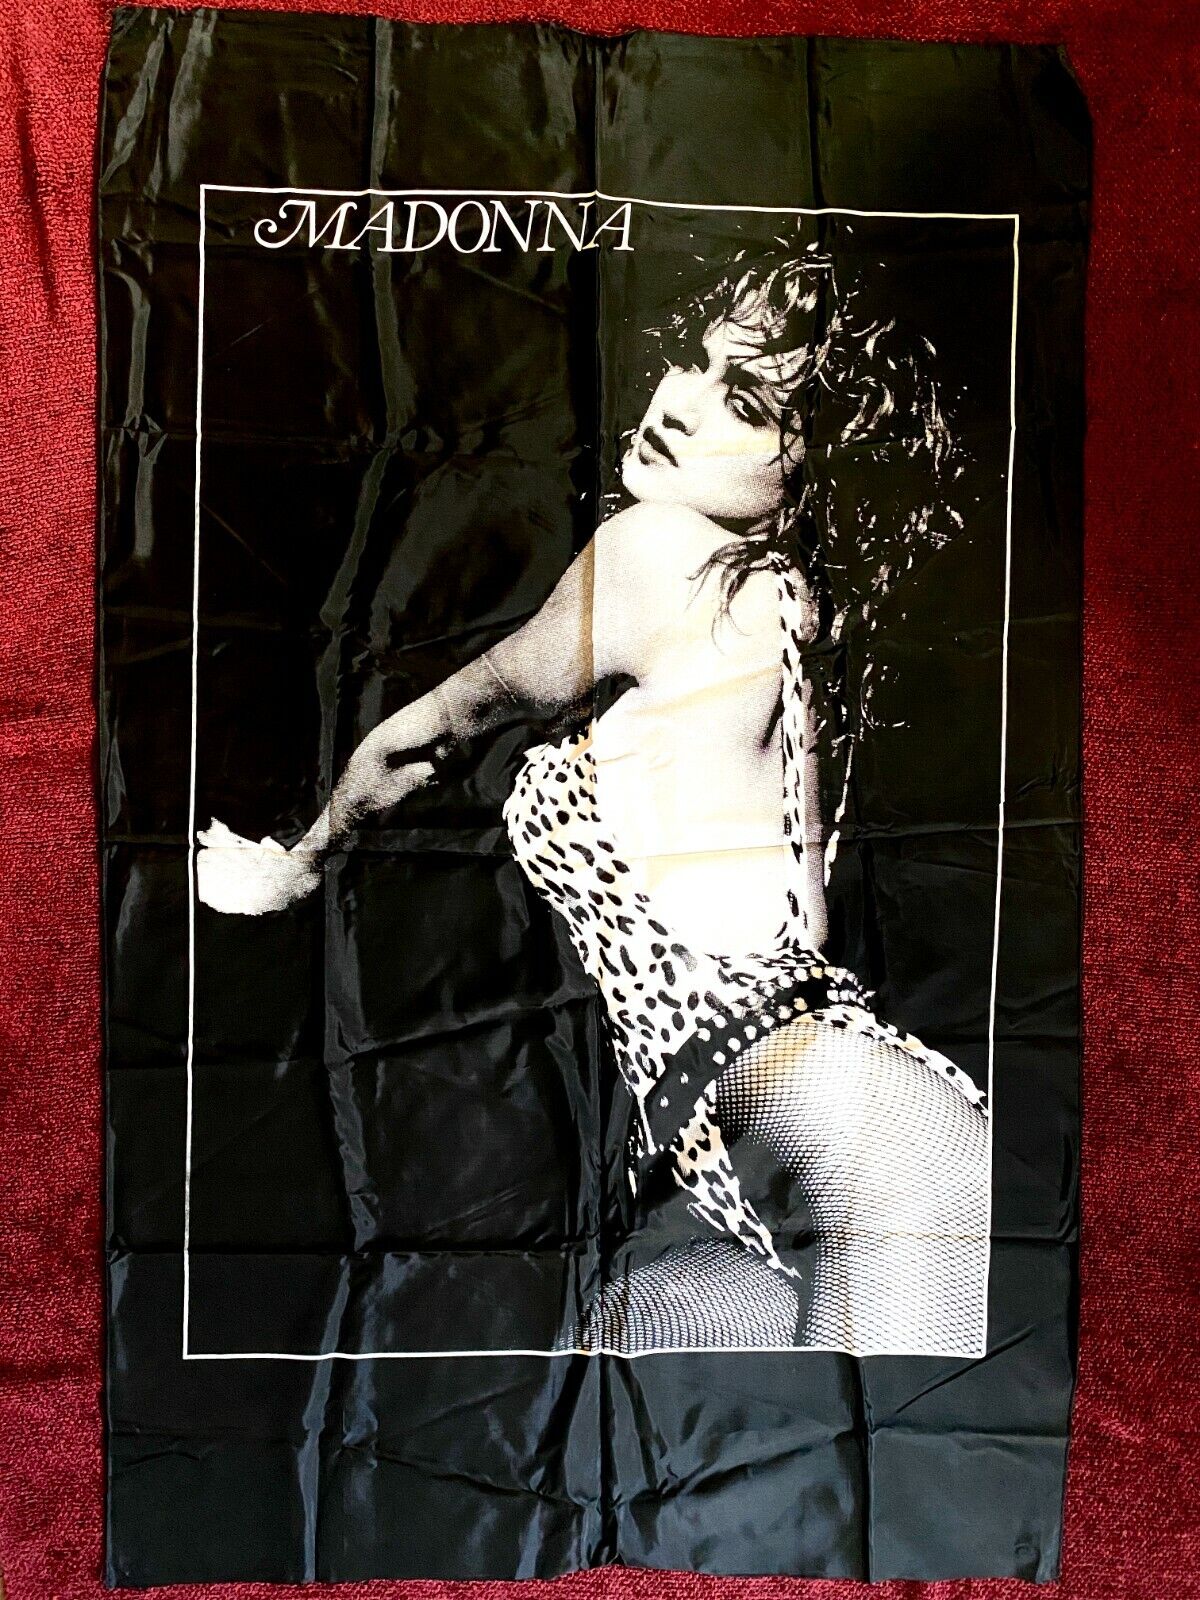 Madonna First Album Photo Big Promo Flag Swimsuit 1985 Virgin Tour Leopard Suit